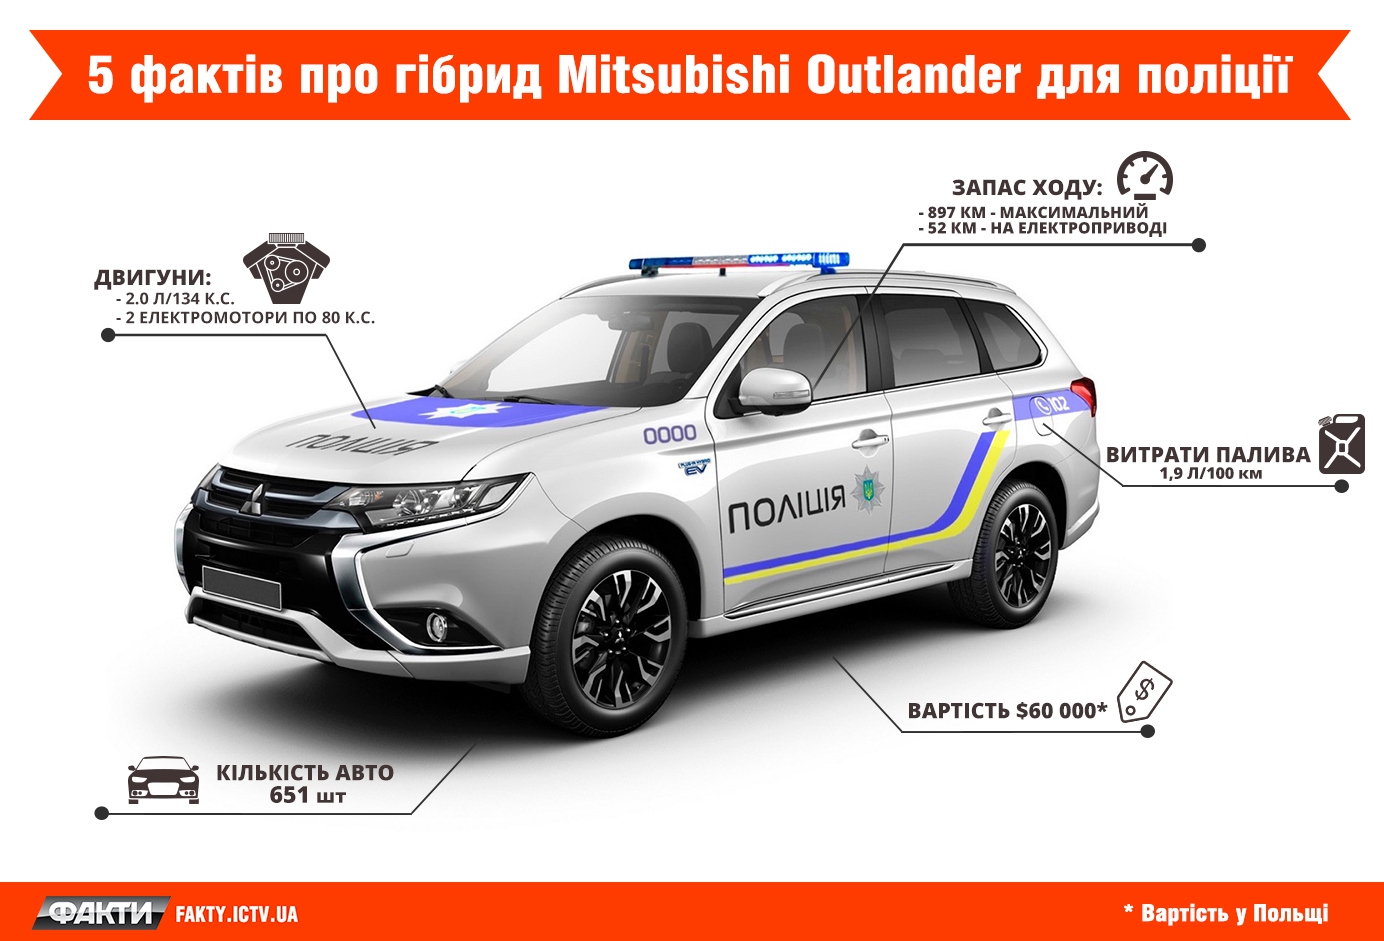 Интересные факты о «полицейском» Mitsubishi Outlander 1